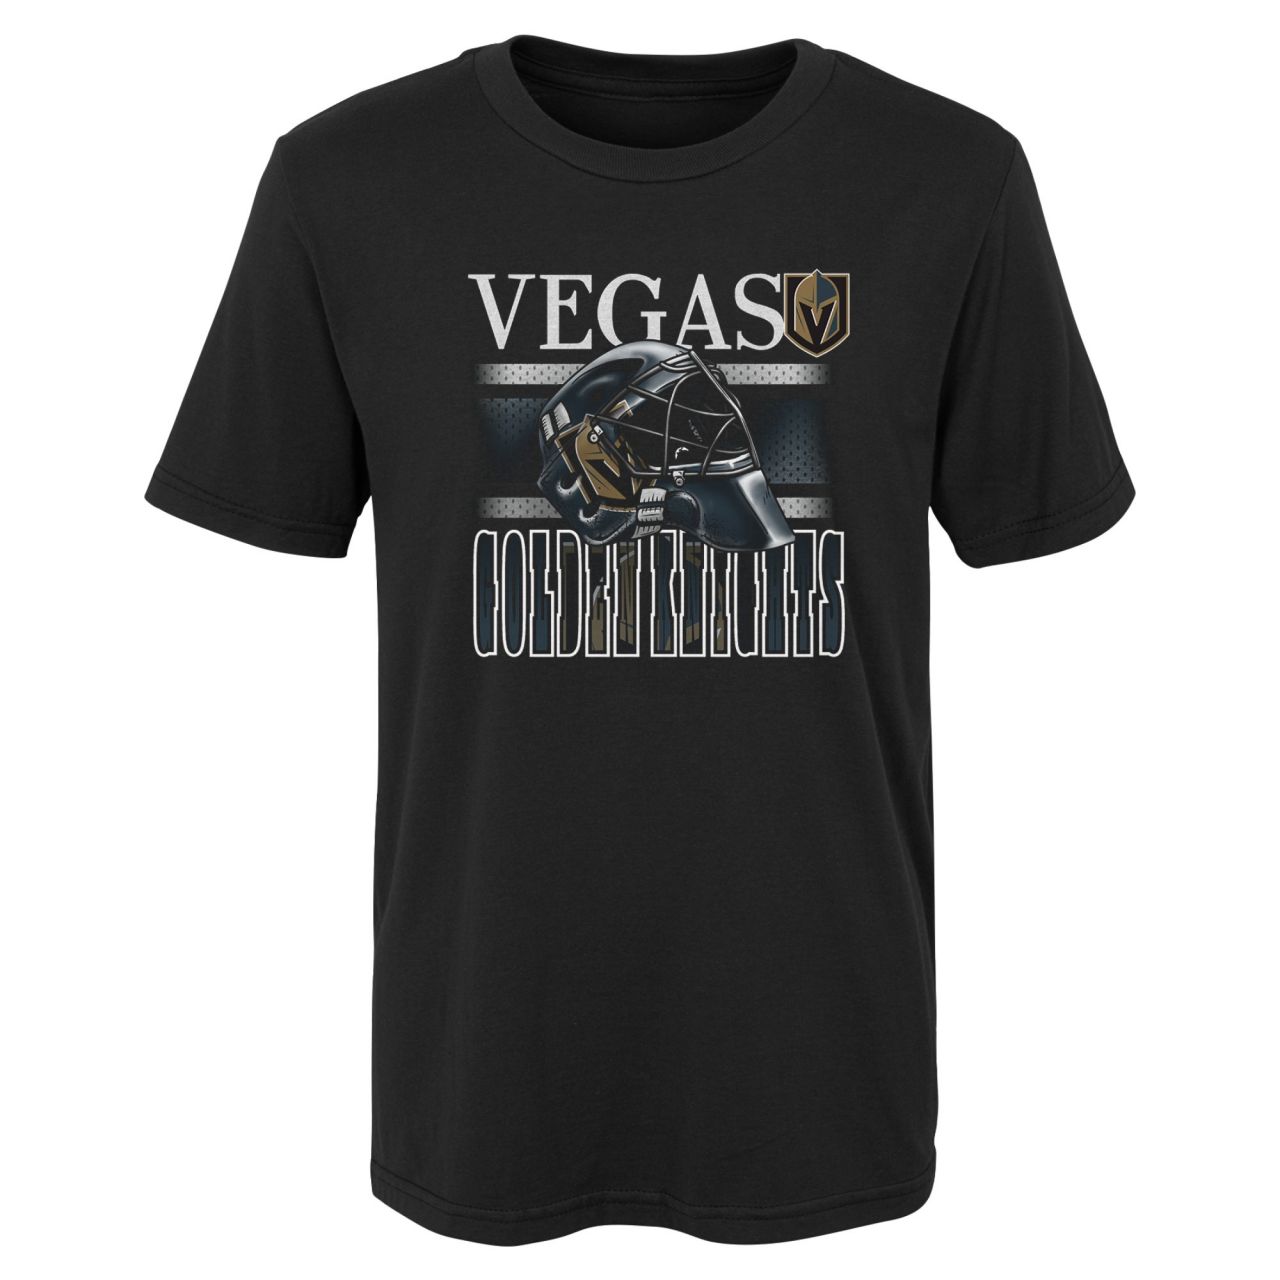 Kinder NHL Shirt - HELMET HEAD Vegas Golden Knights von Outerstuff